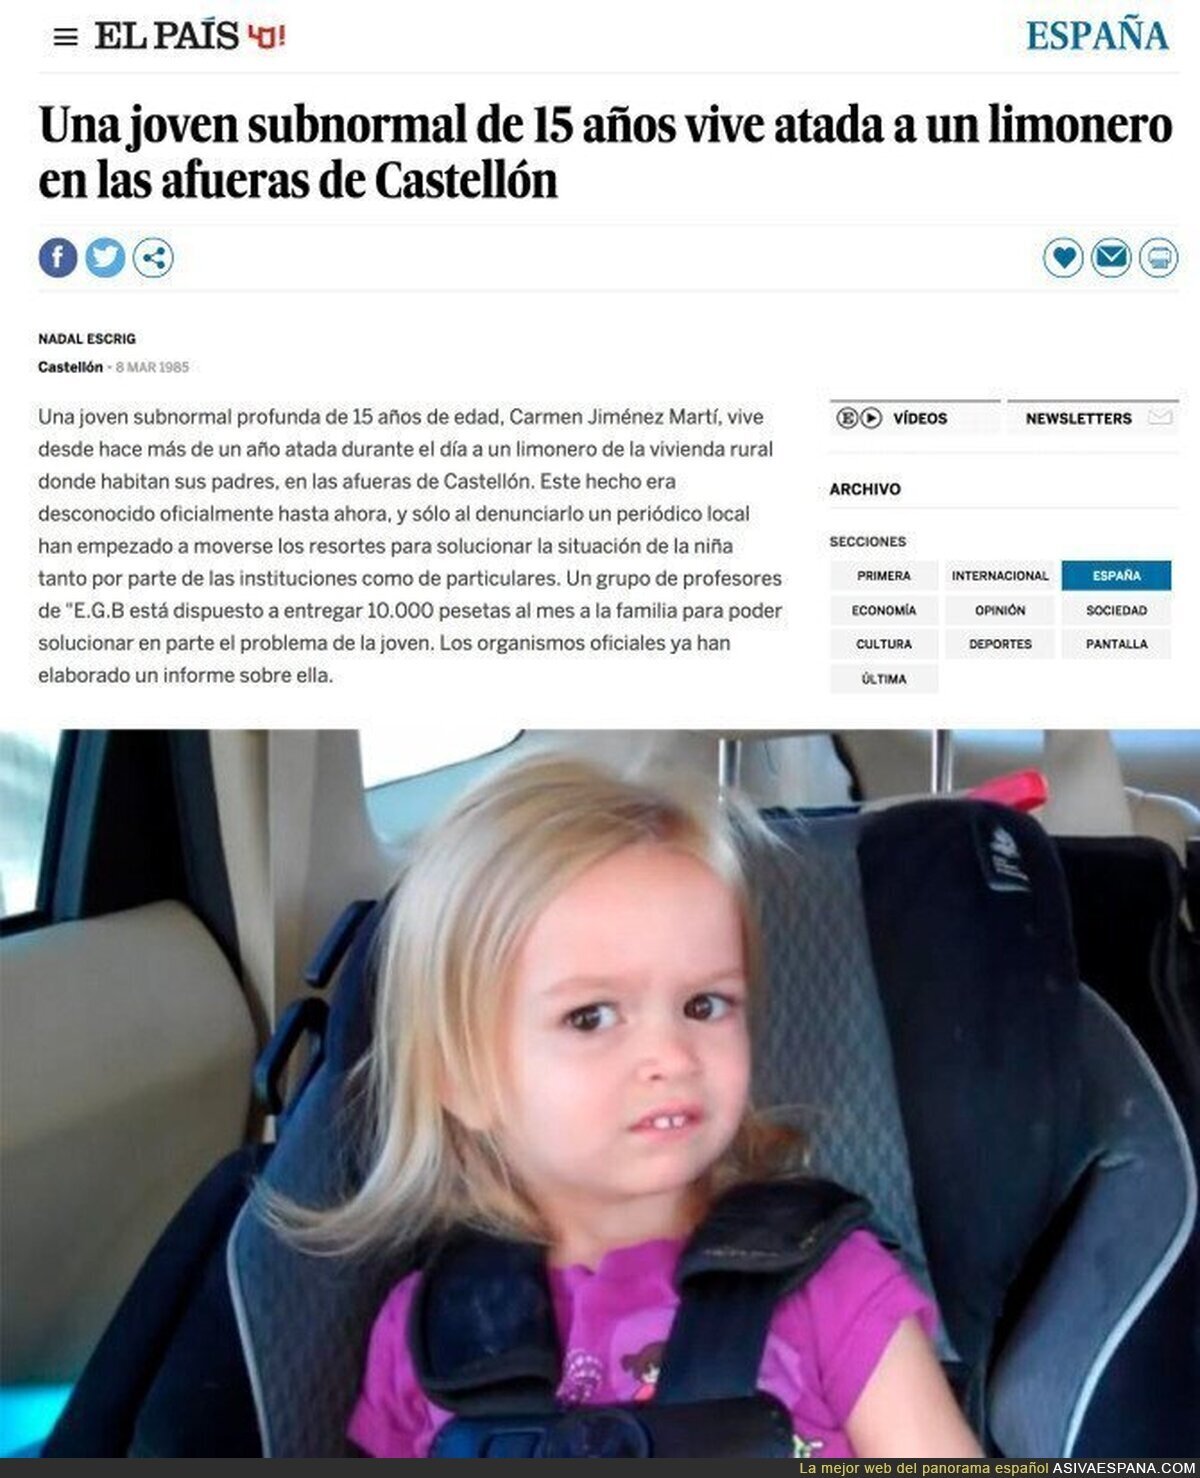 Así contaba El País una noticia de Castellón en 1985